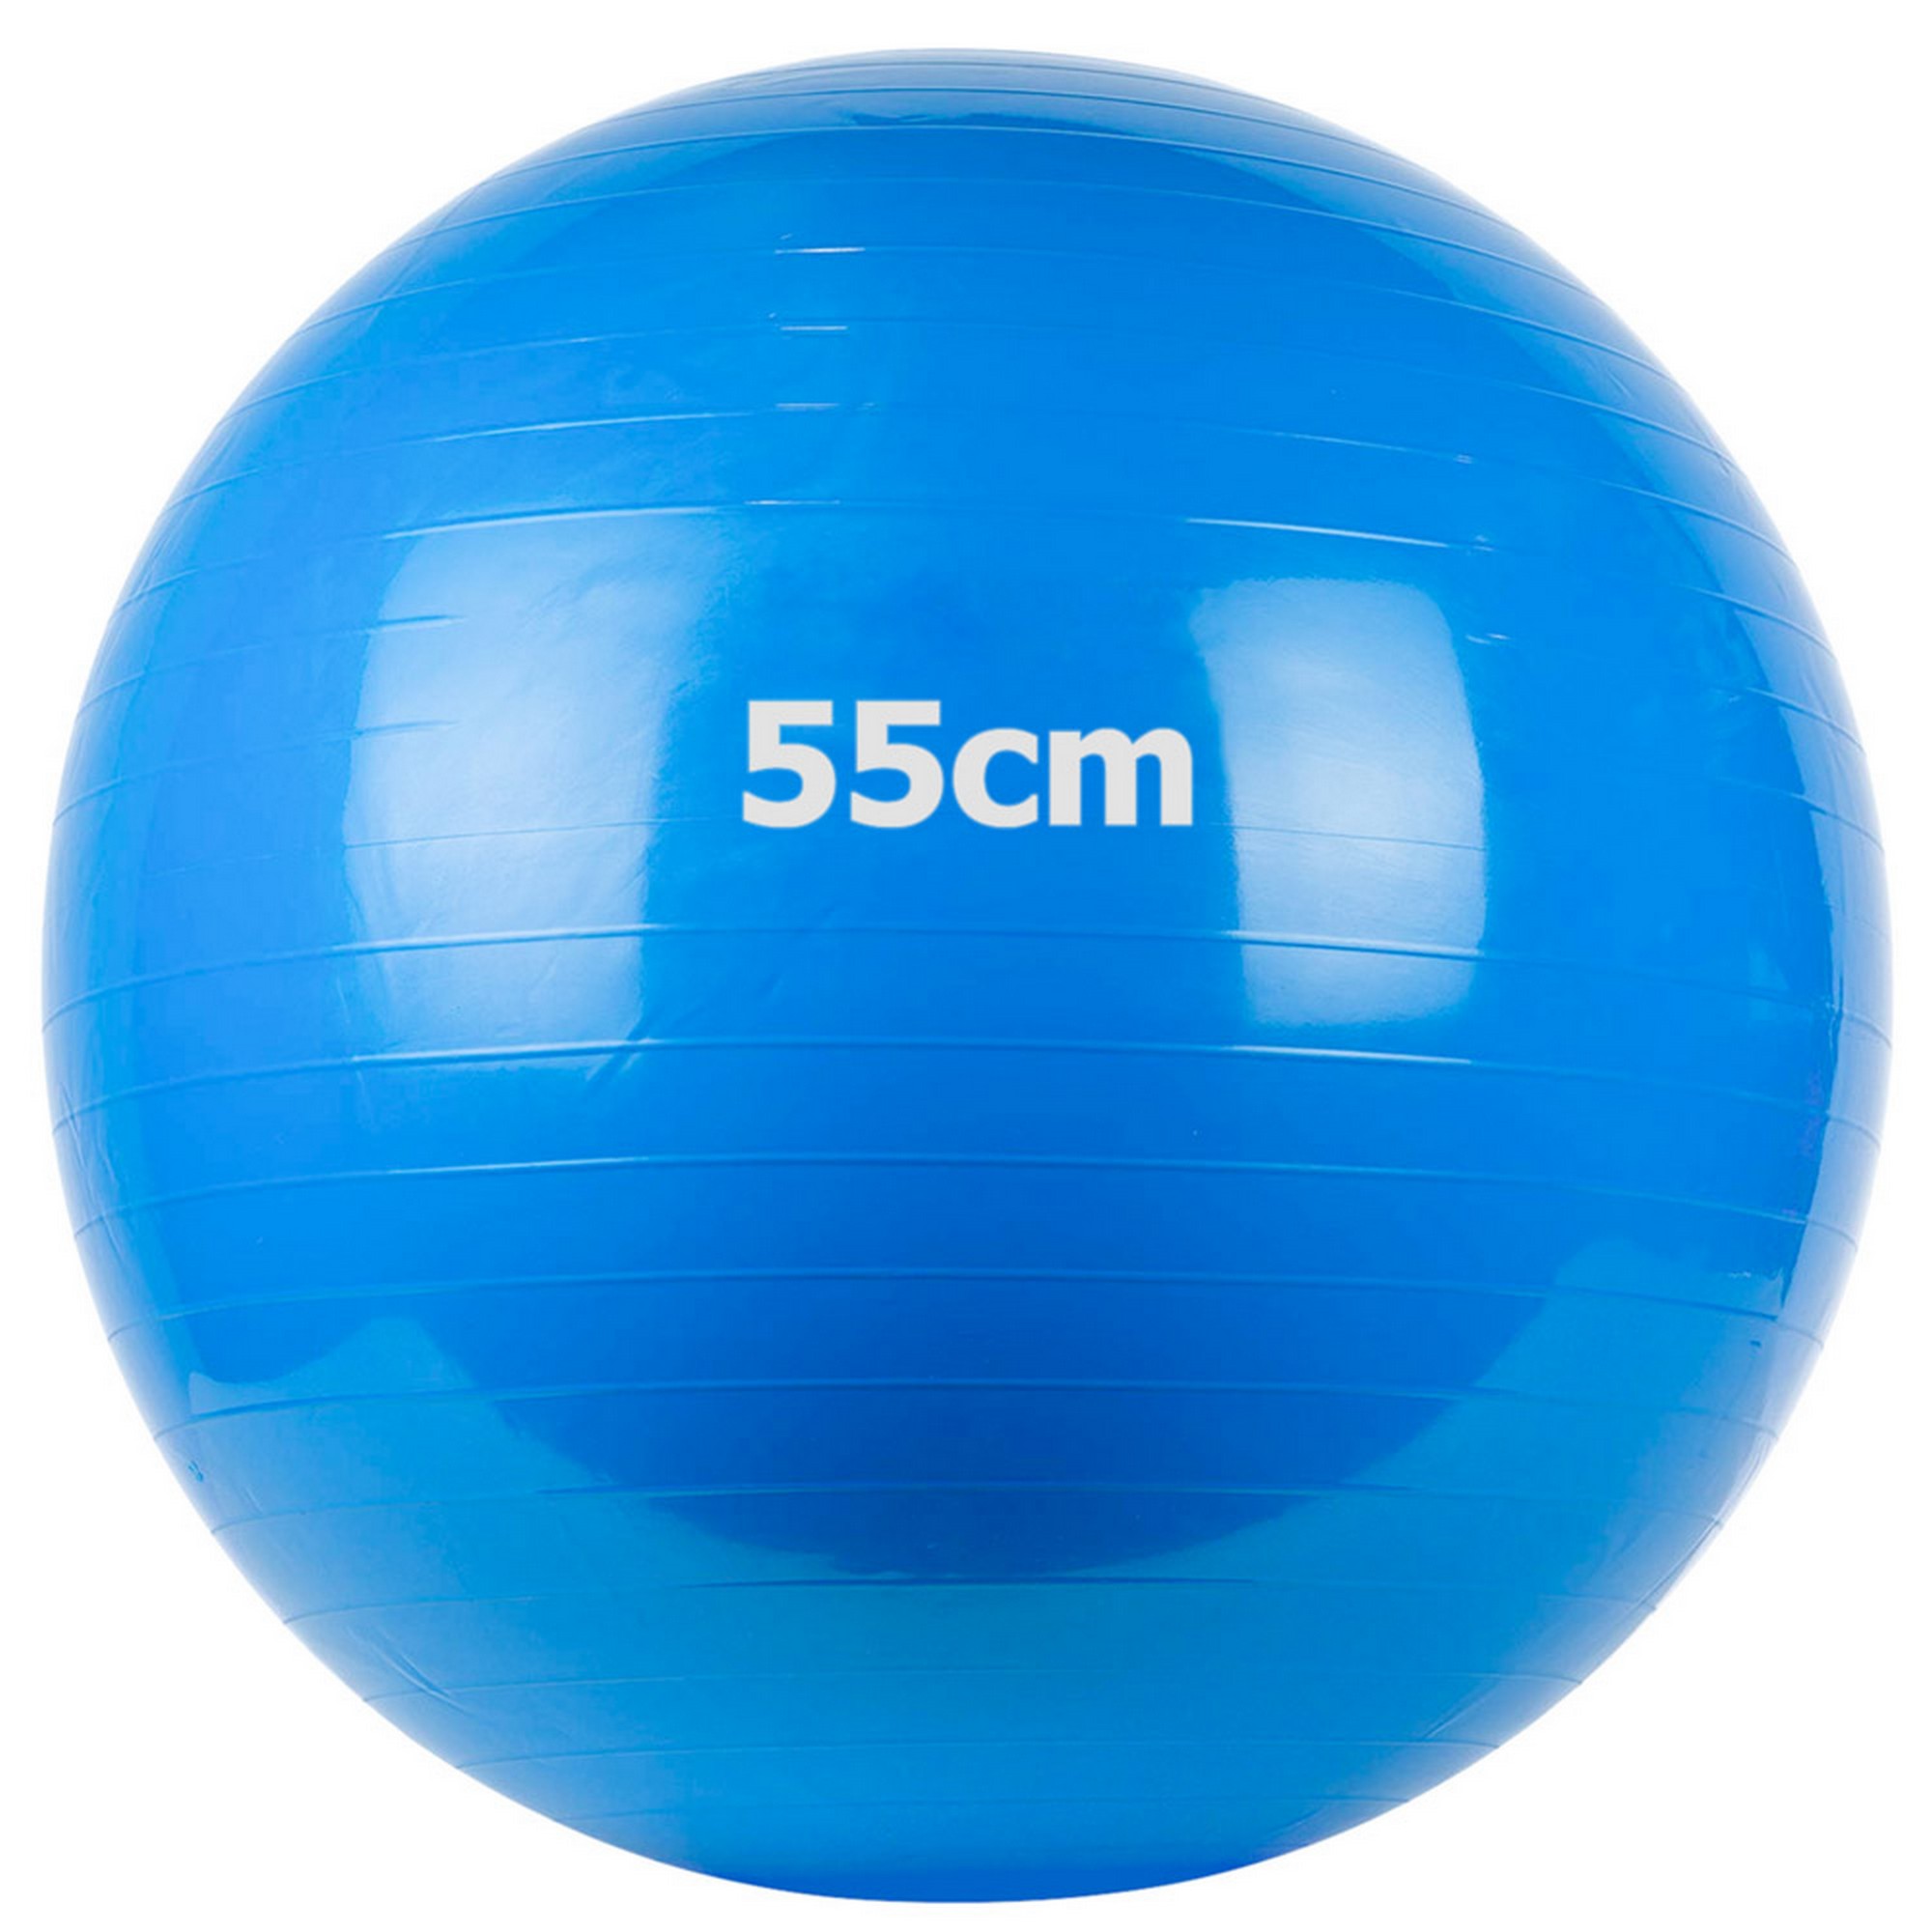 Купить Мяч гимнастический Gum Ball d55 см Sportex GM-55-2 синий,